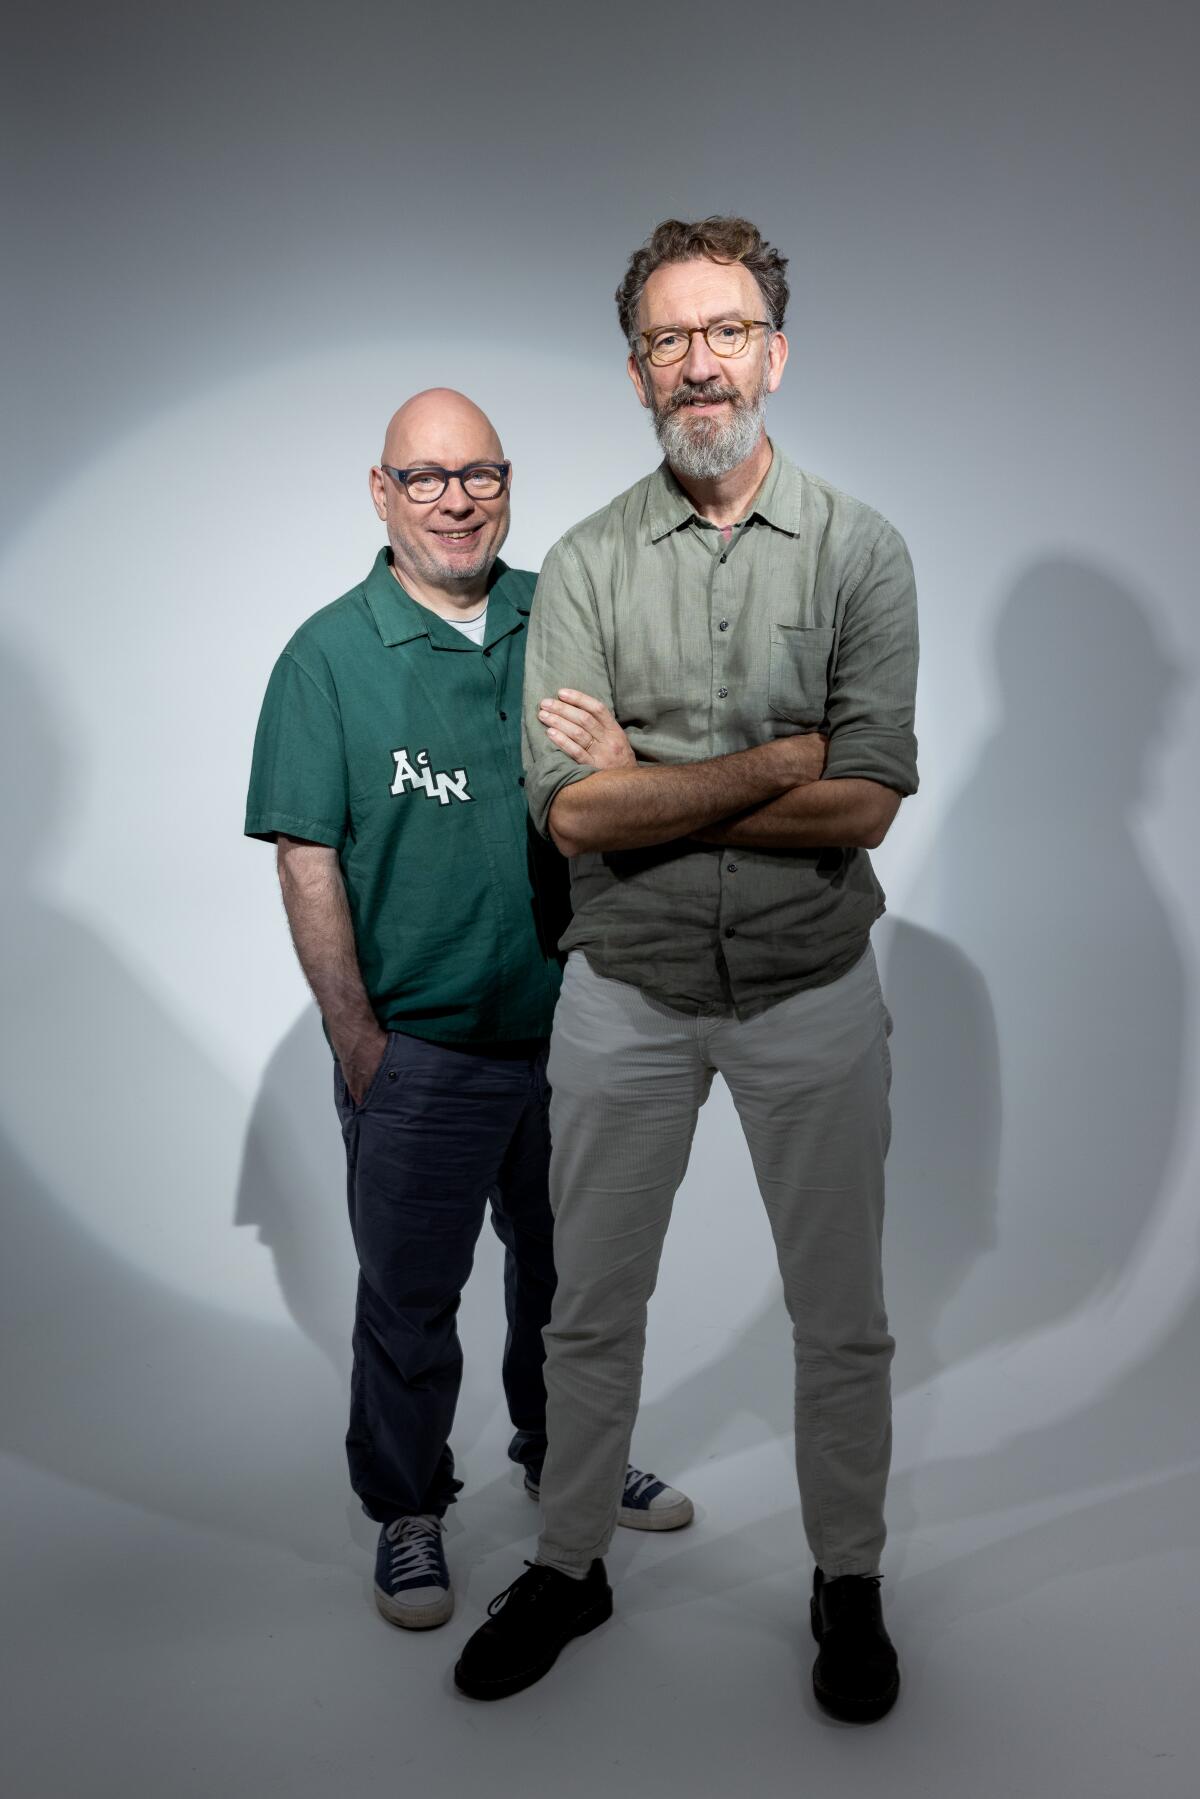 A bald man in a green shirt (Gary Clark) stands behind a tall, bespectacled man with a graying beard (John Carney)